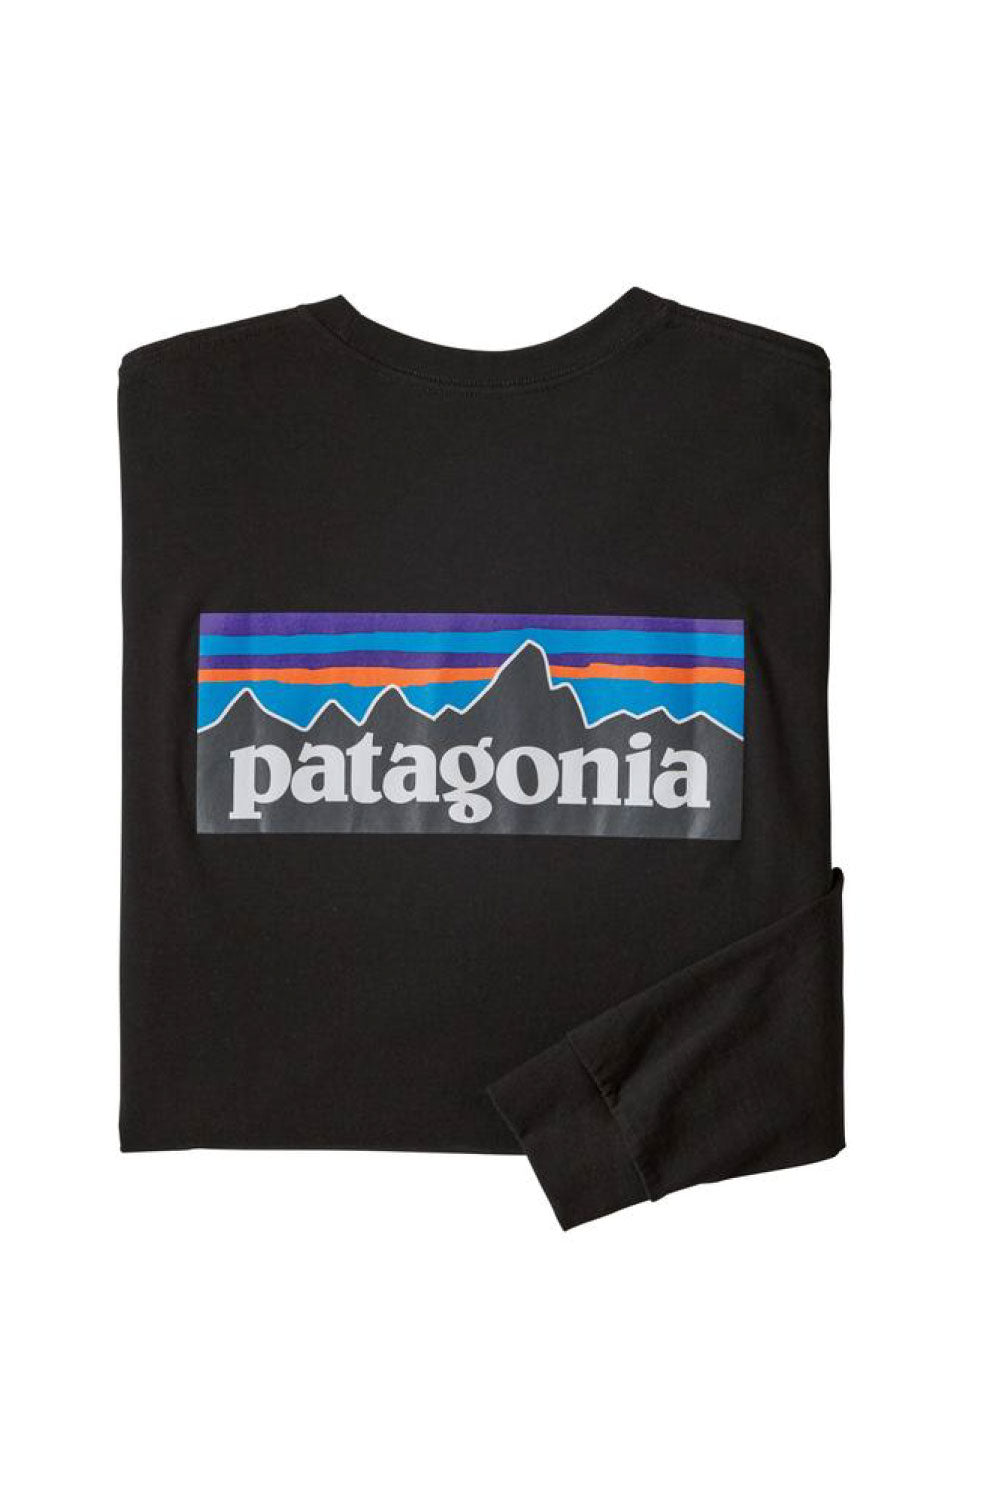 Shop Patagonia | Patagonia Men’s Long Sleeve P-6 Logo Responsibili-Tee